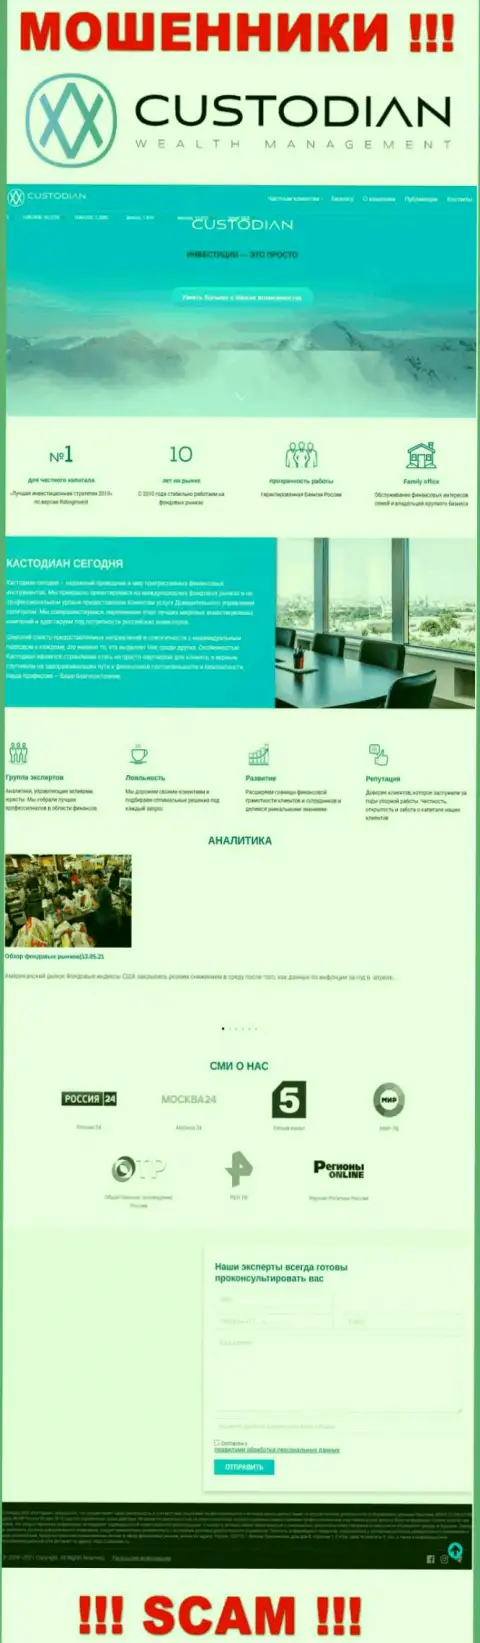 Скриншот официального сайта противоправно действующей конторы Custodian